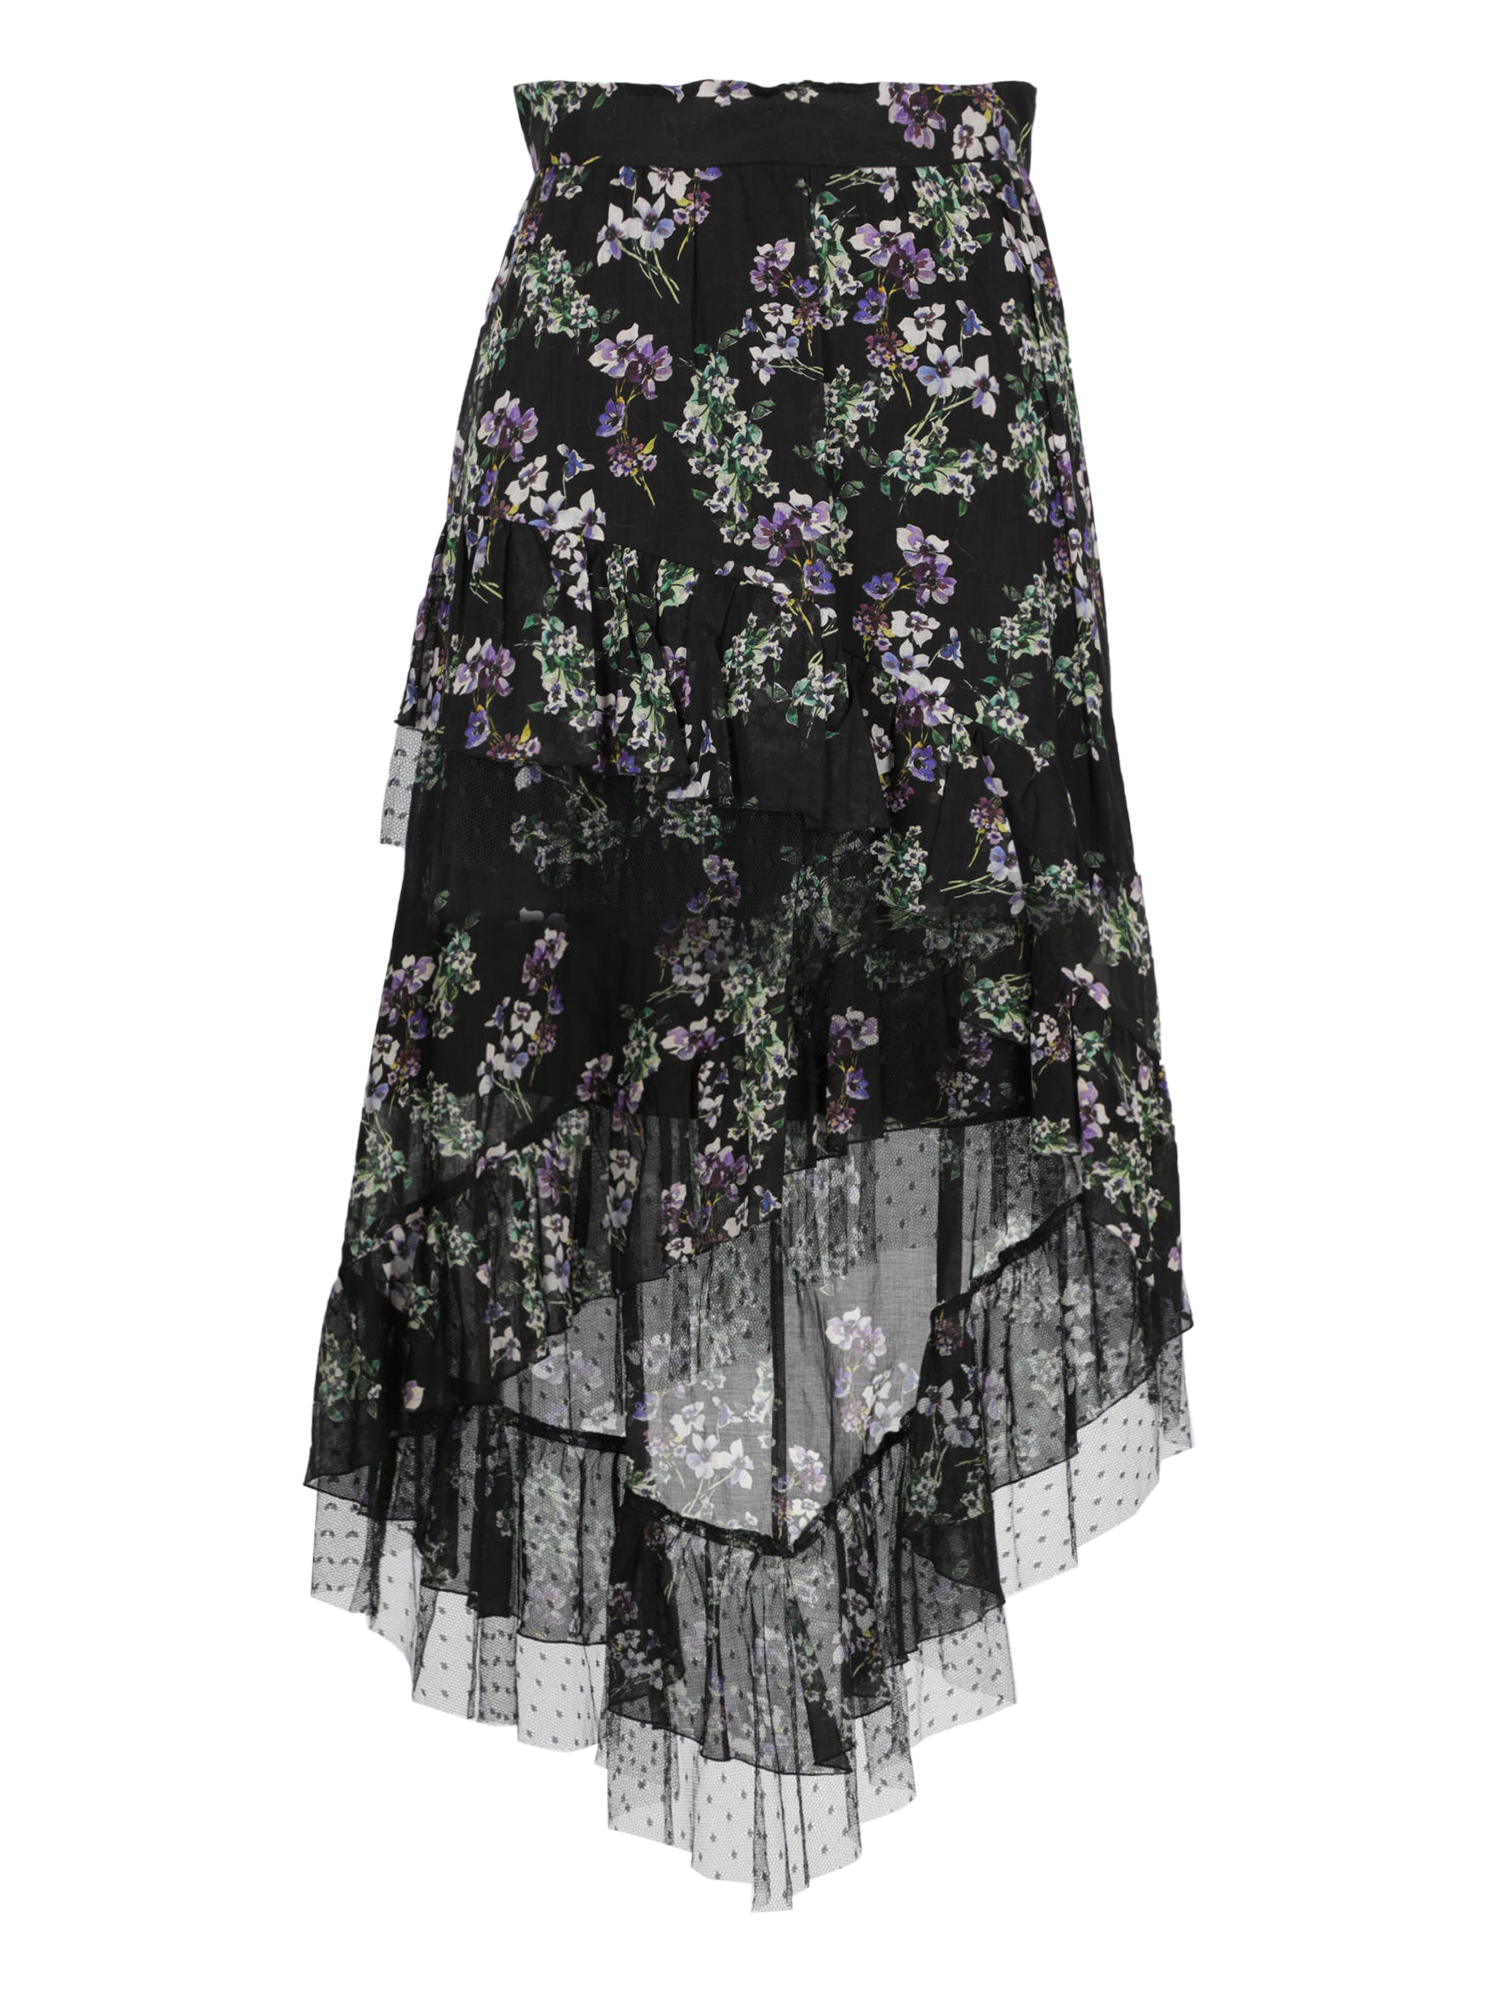 Condition: Excellent, Floral Print Fabric, Color: Black, Purple - S - IT 40 -